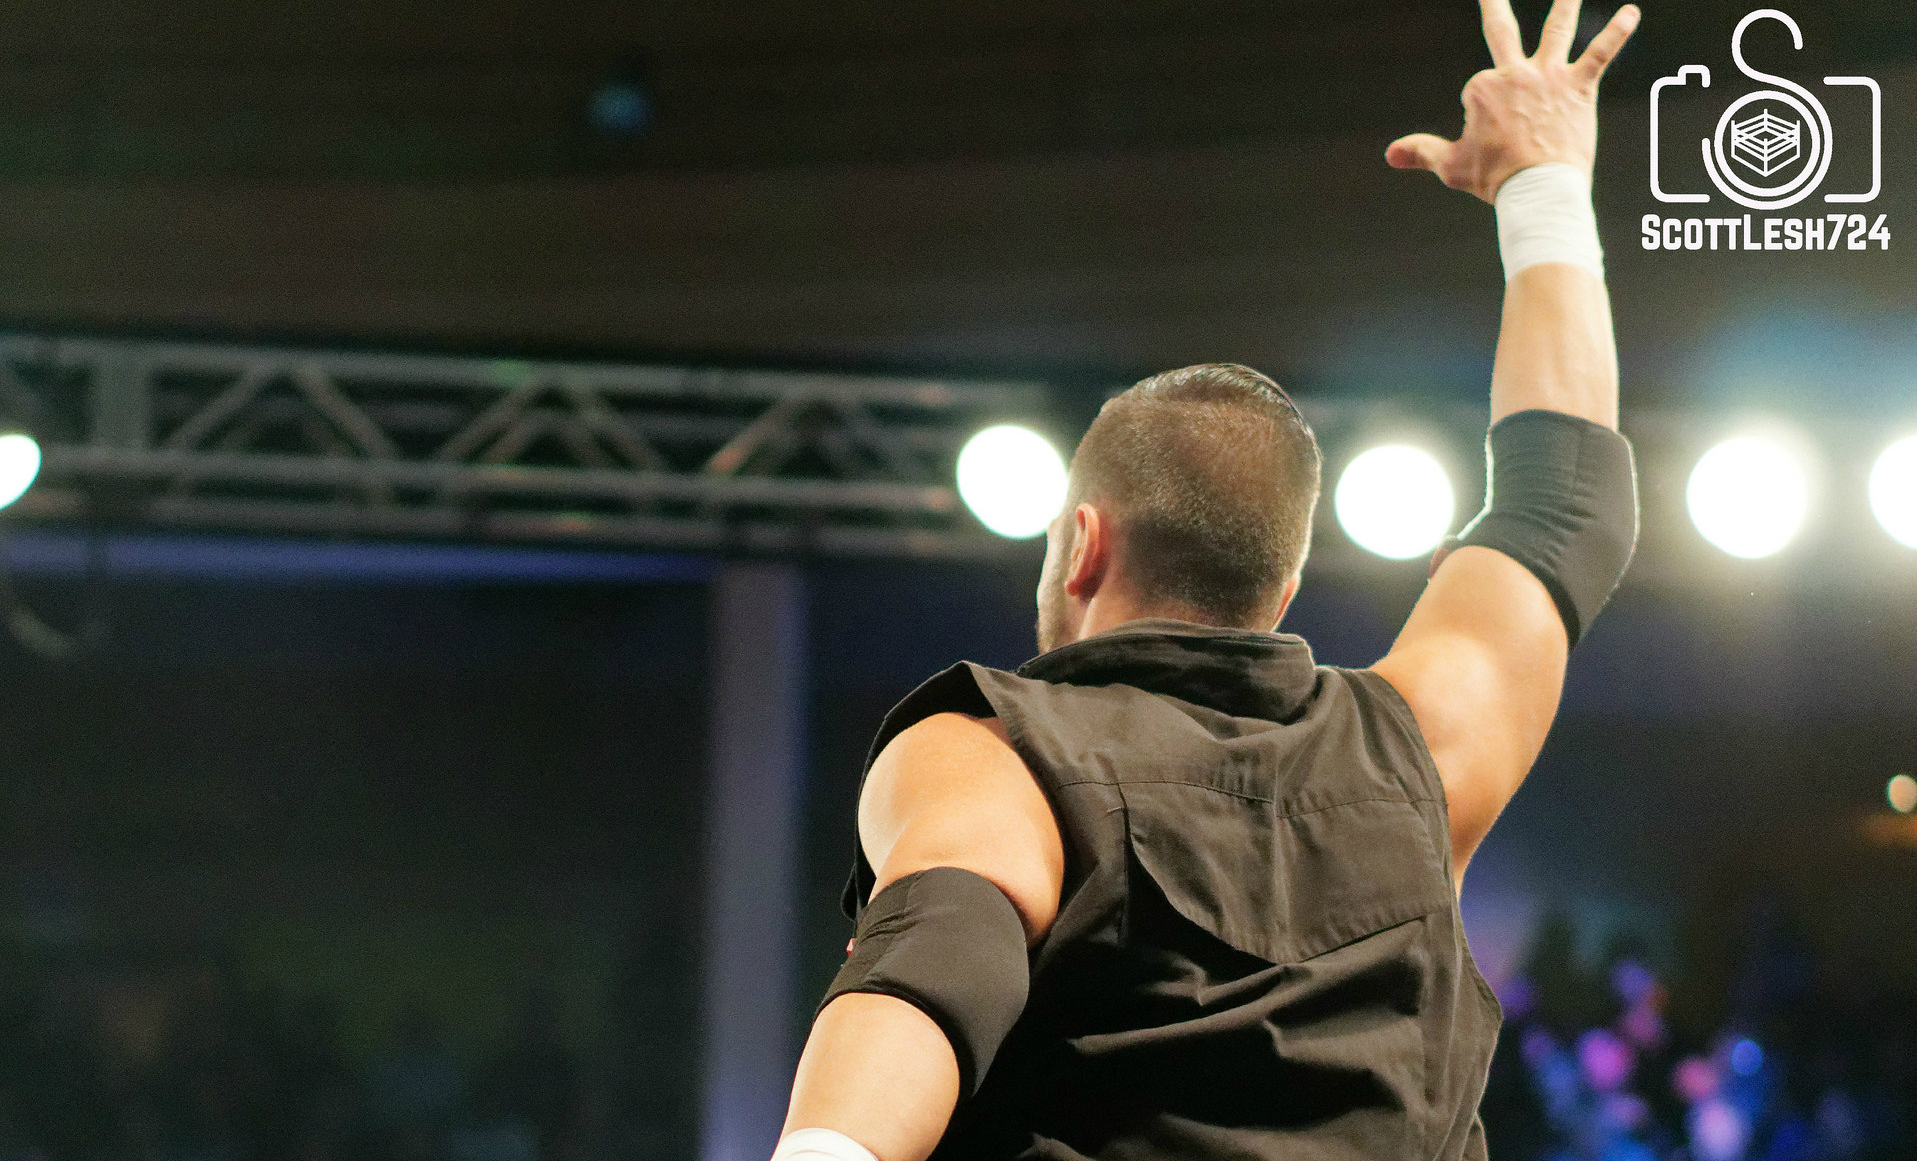 Flip Gordon Discusses Expiring ROH Deals, NJPW, and More